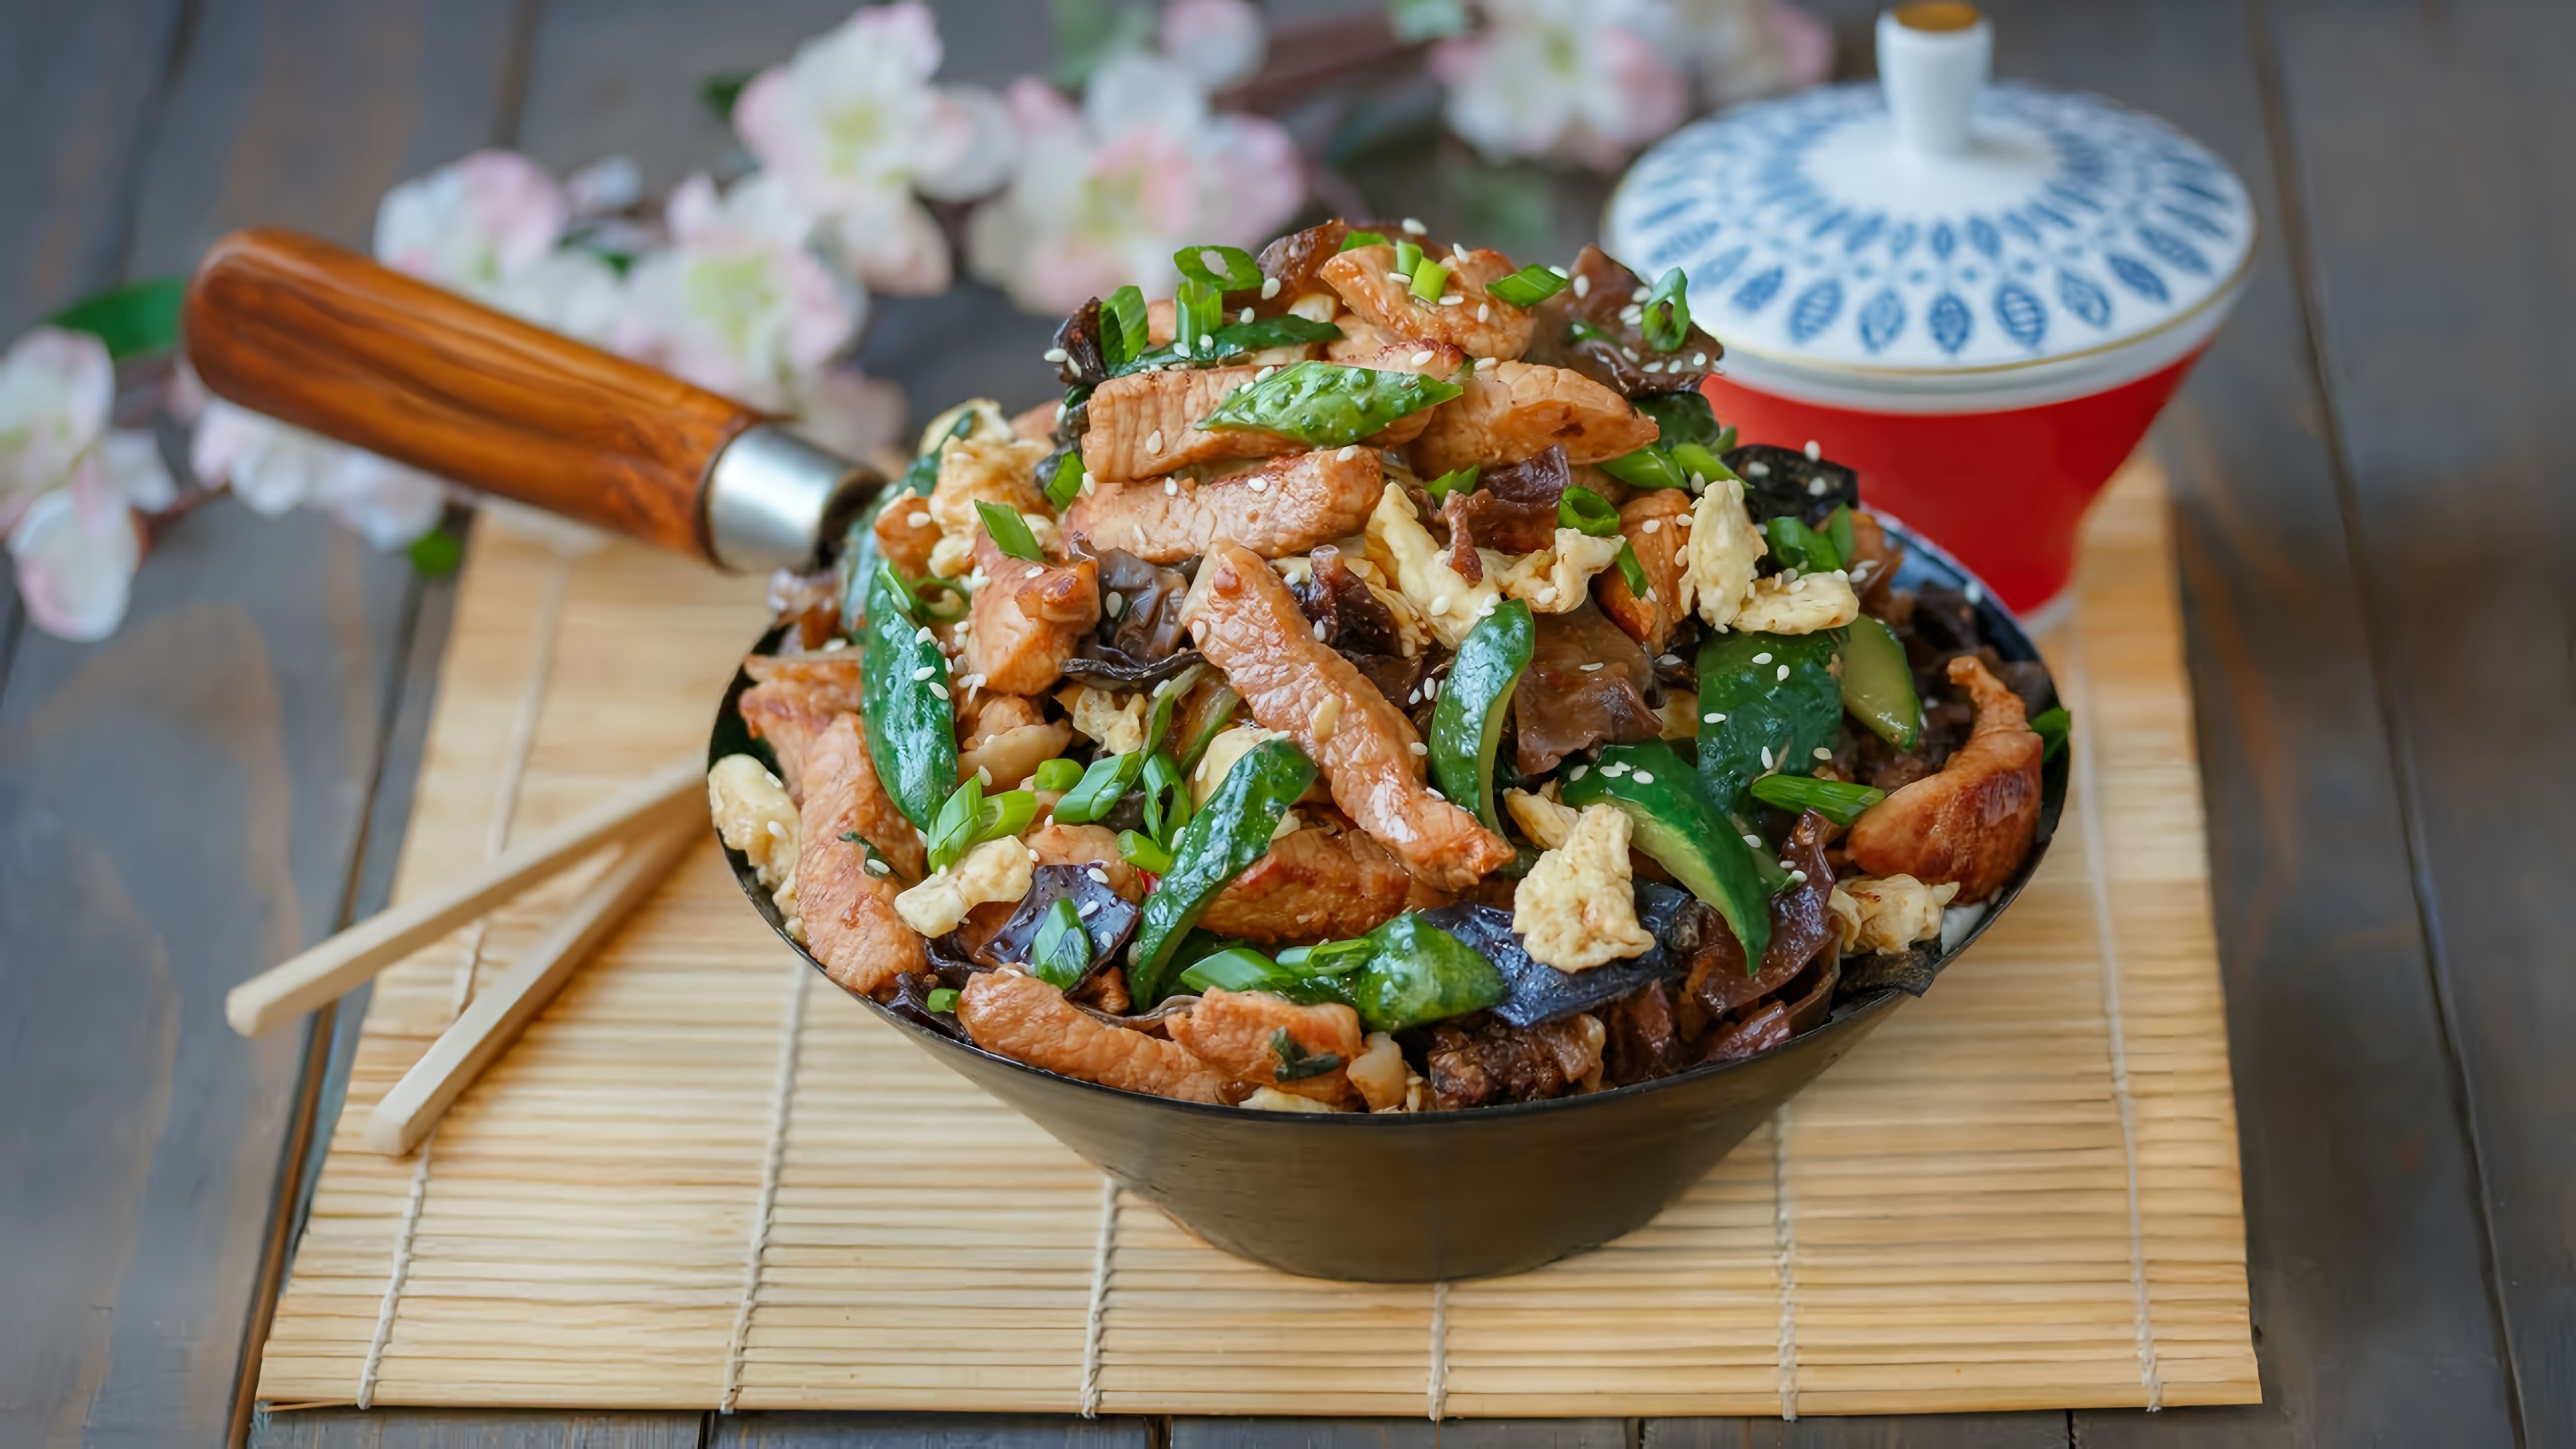 В этом видео демонстрируется рецепт приготовления свинины Му Шу, традиционного китайского блюда